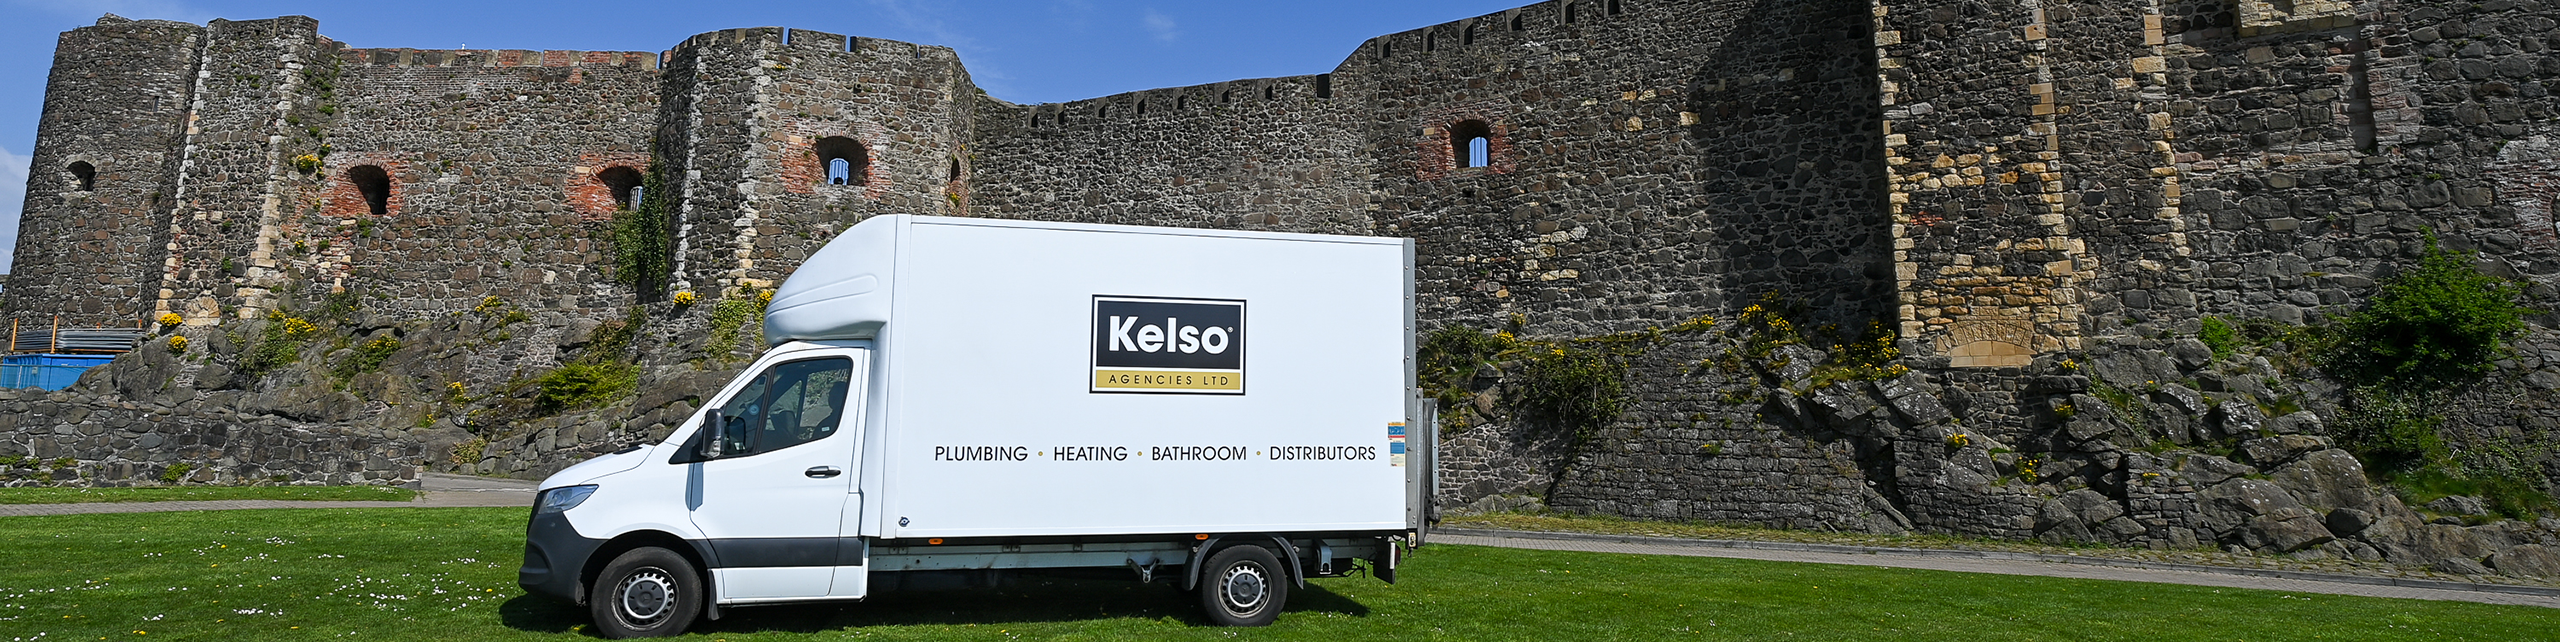 Kelso Agencies van at Carrickfergus Castle